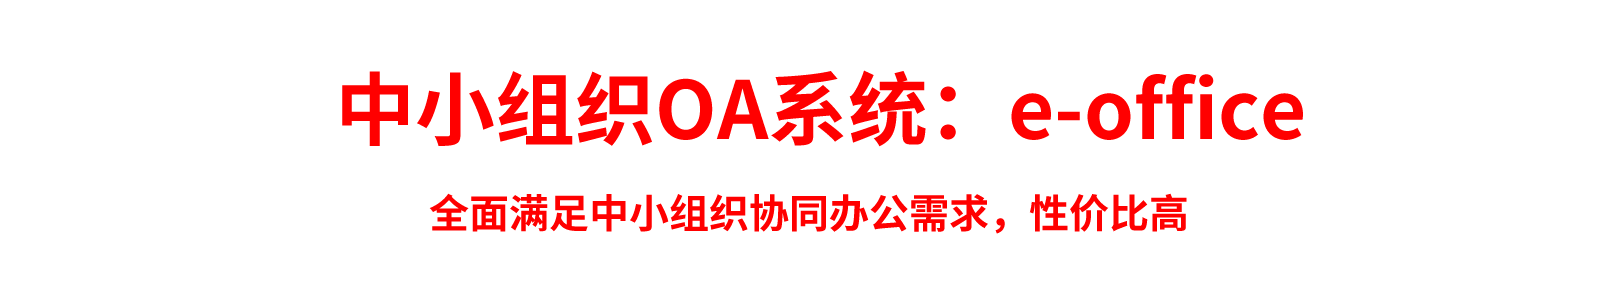 云南中小企业组织OA软件系统